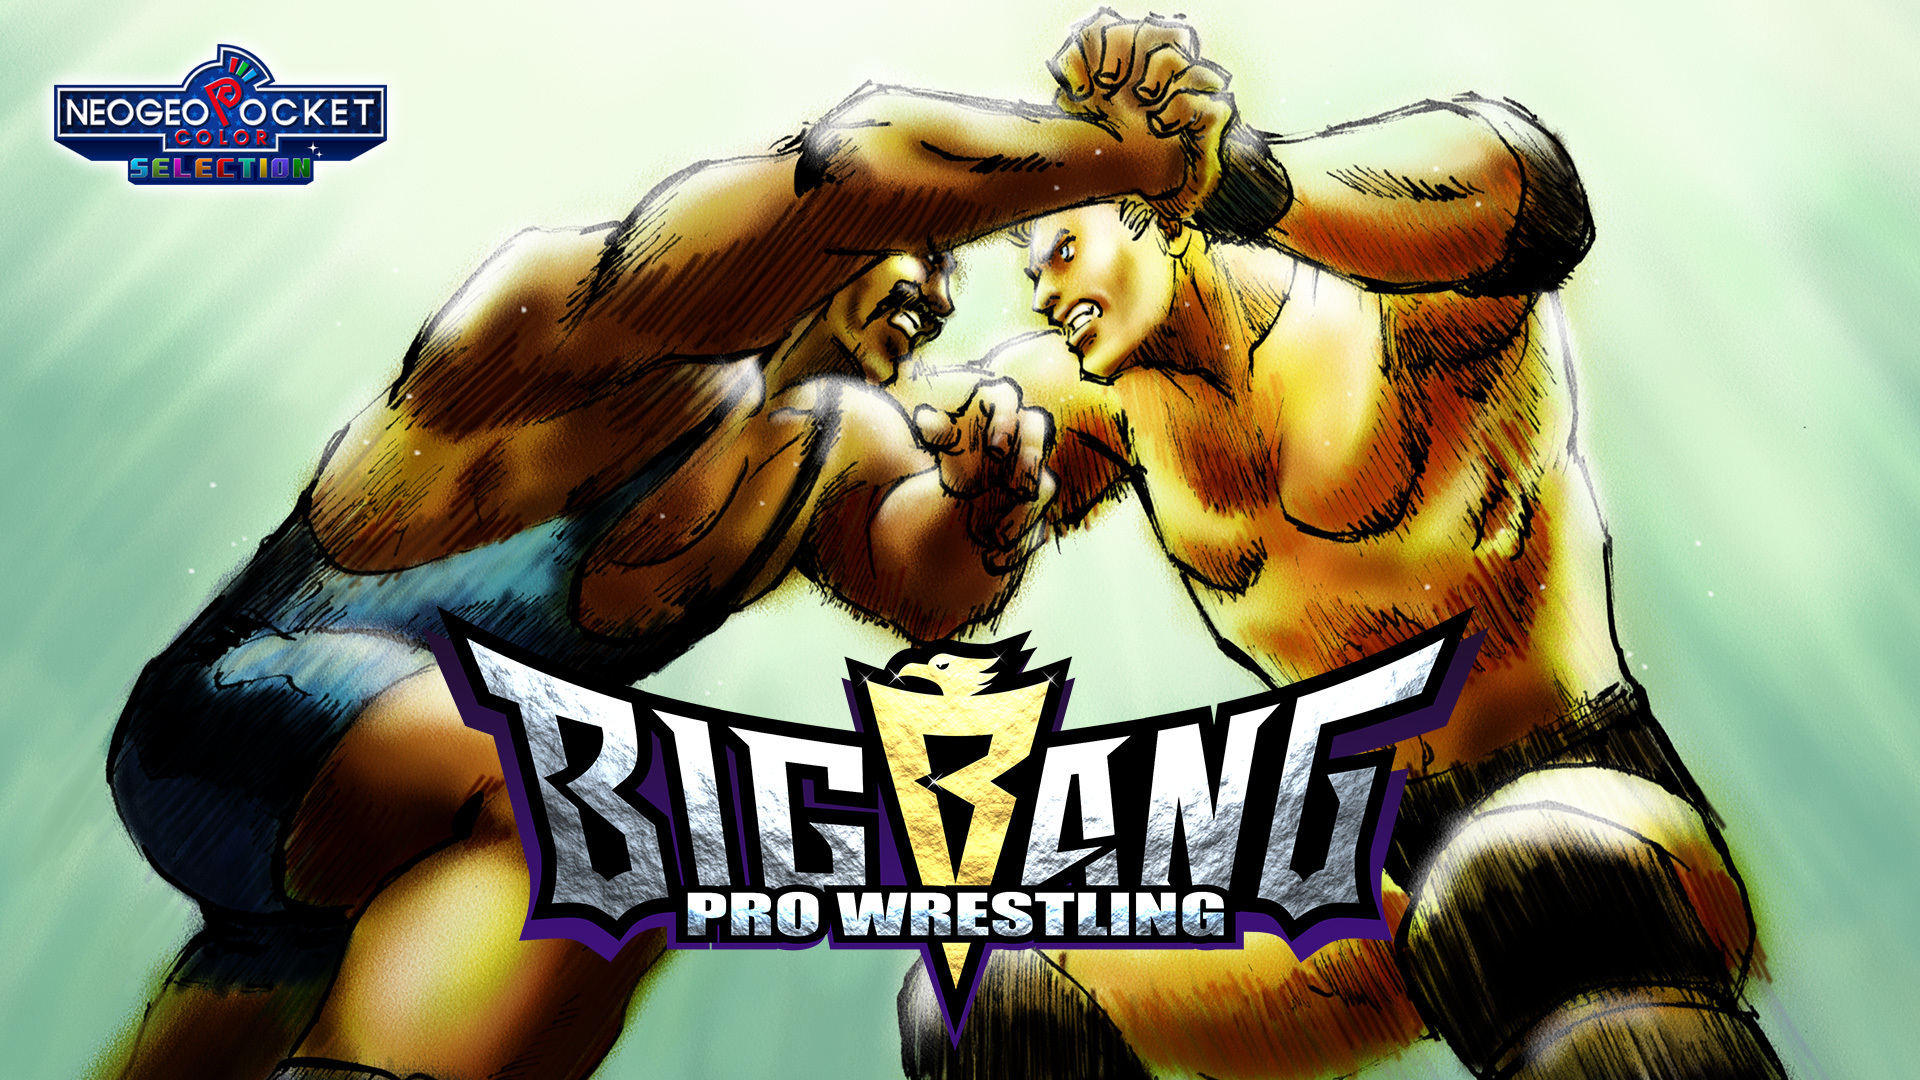 懷舊職業摔角遊戲《BIG BANG PRO WRESTLING》在 Switch 平台登場